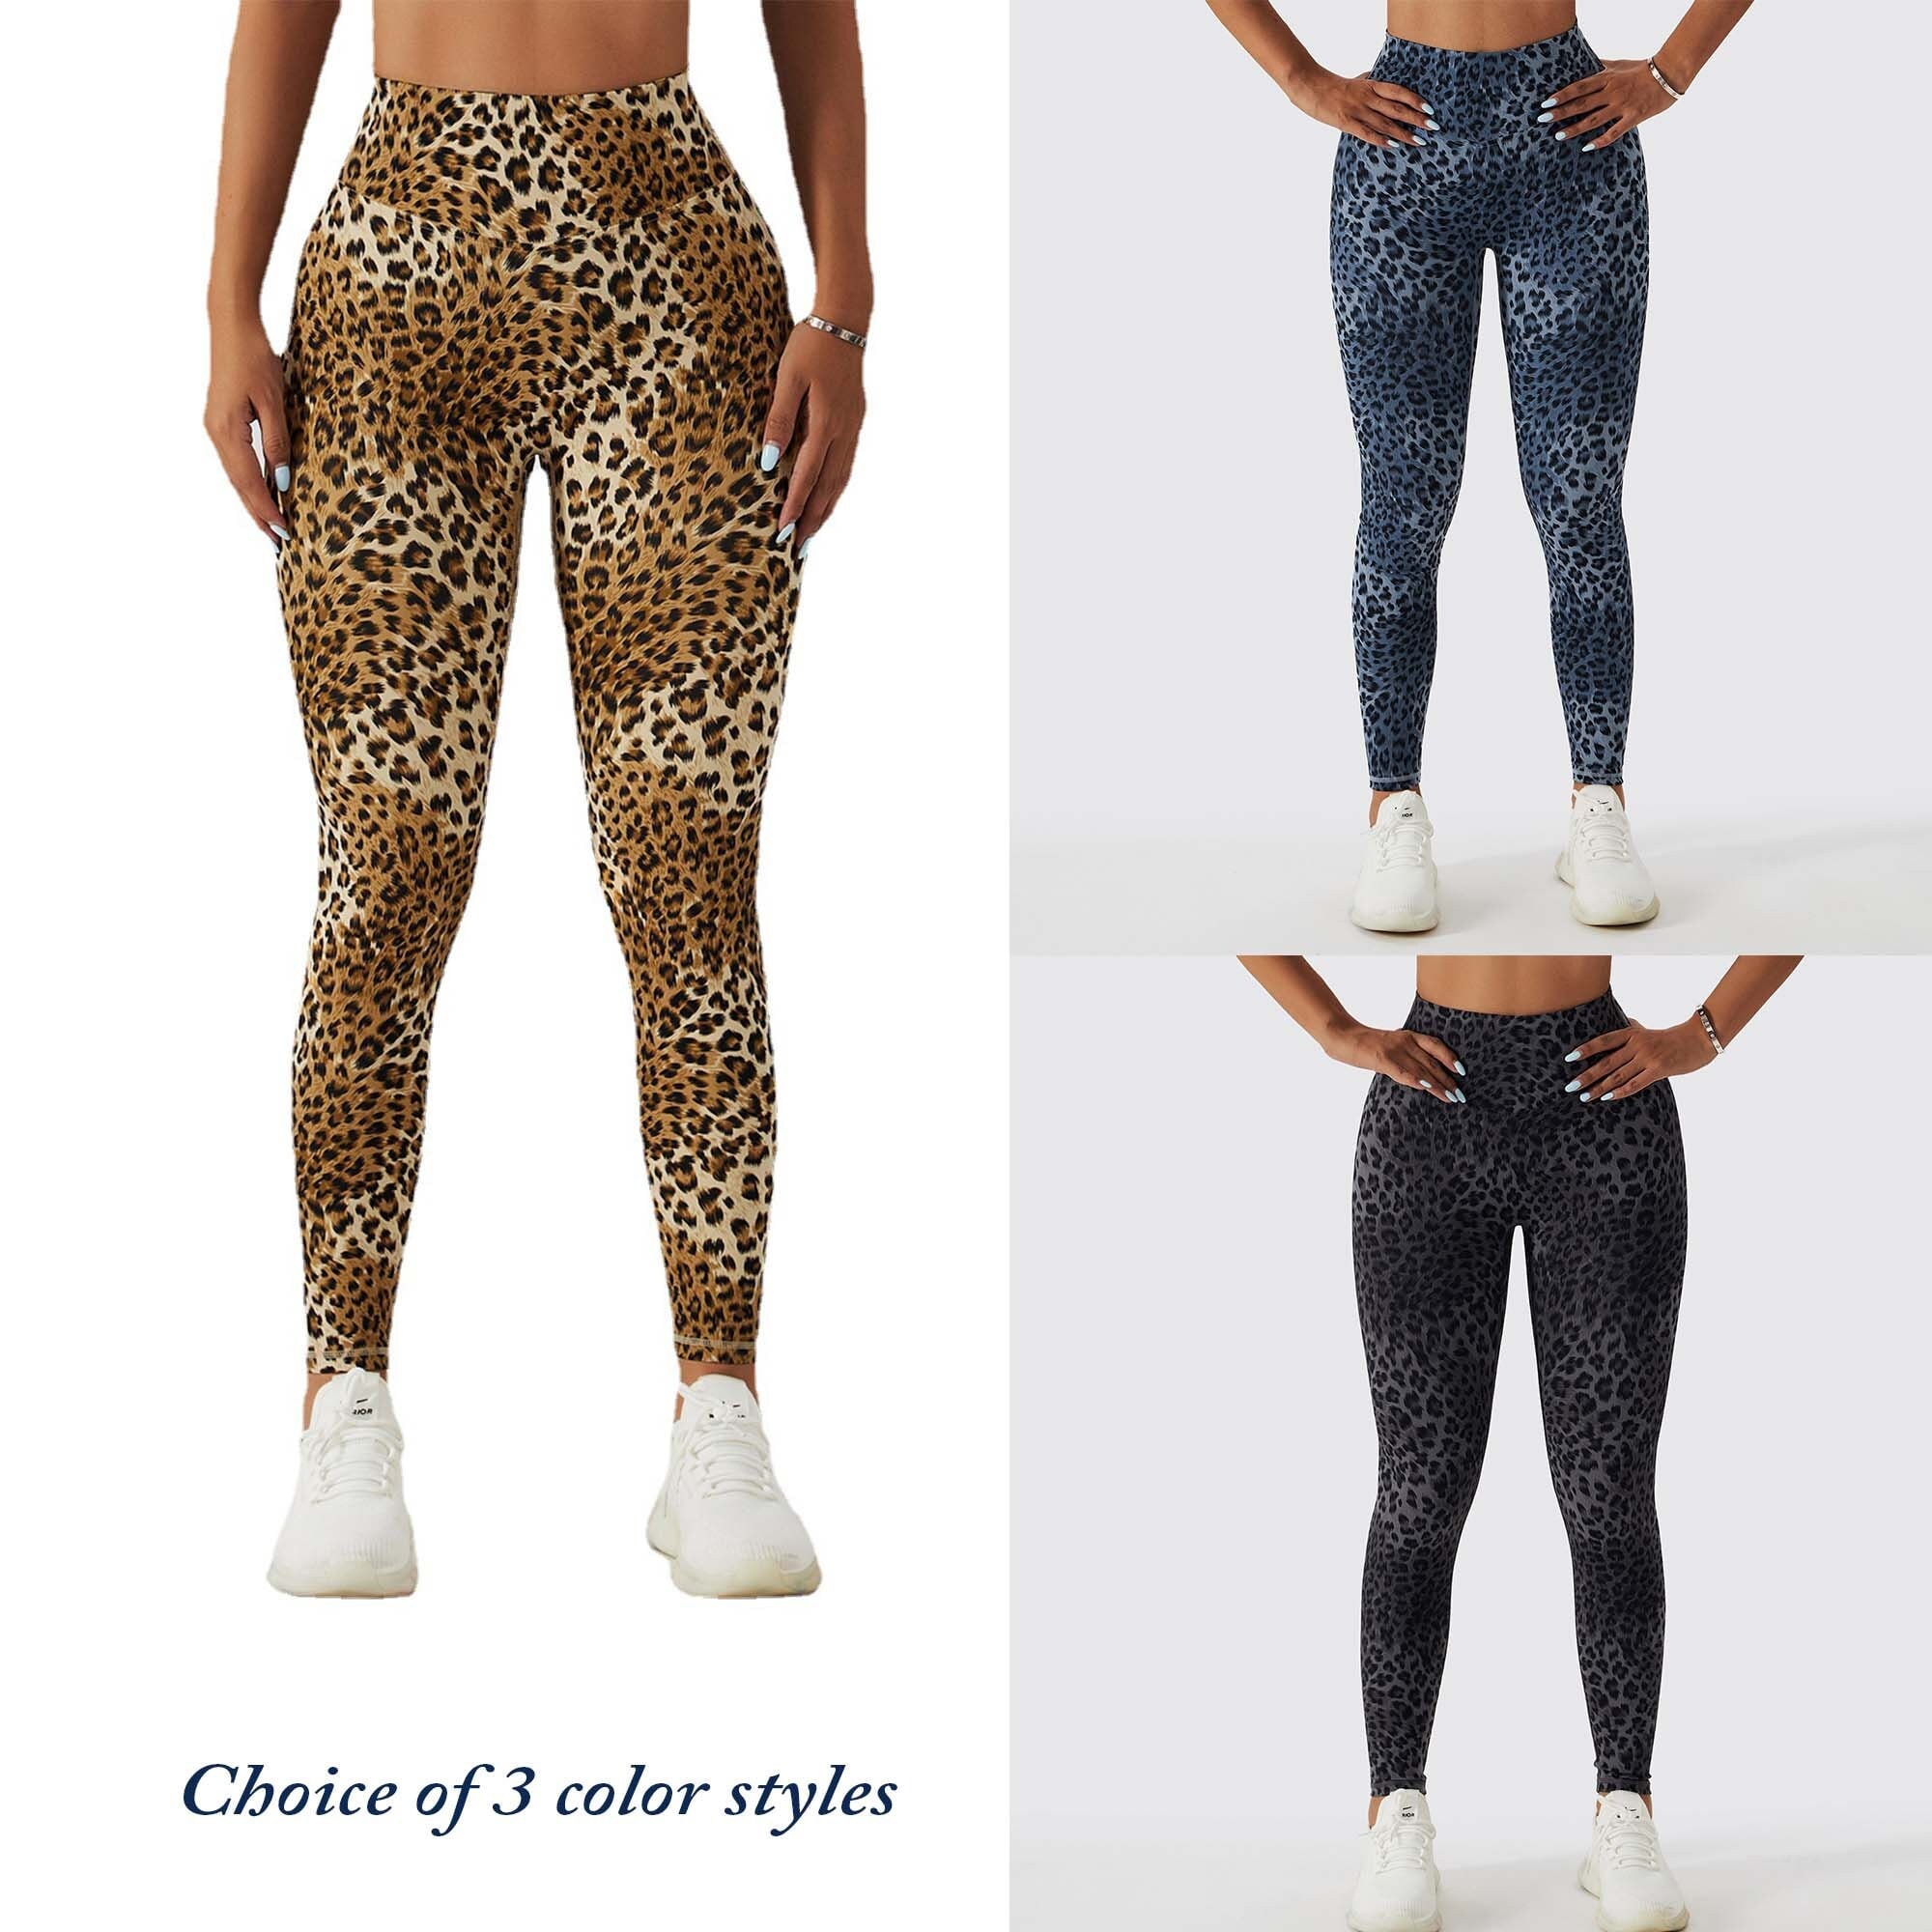 Lululemon Leopard Print Leggings size 4. - $54 - From Balle